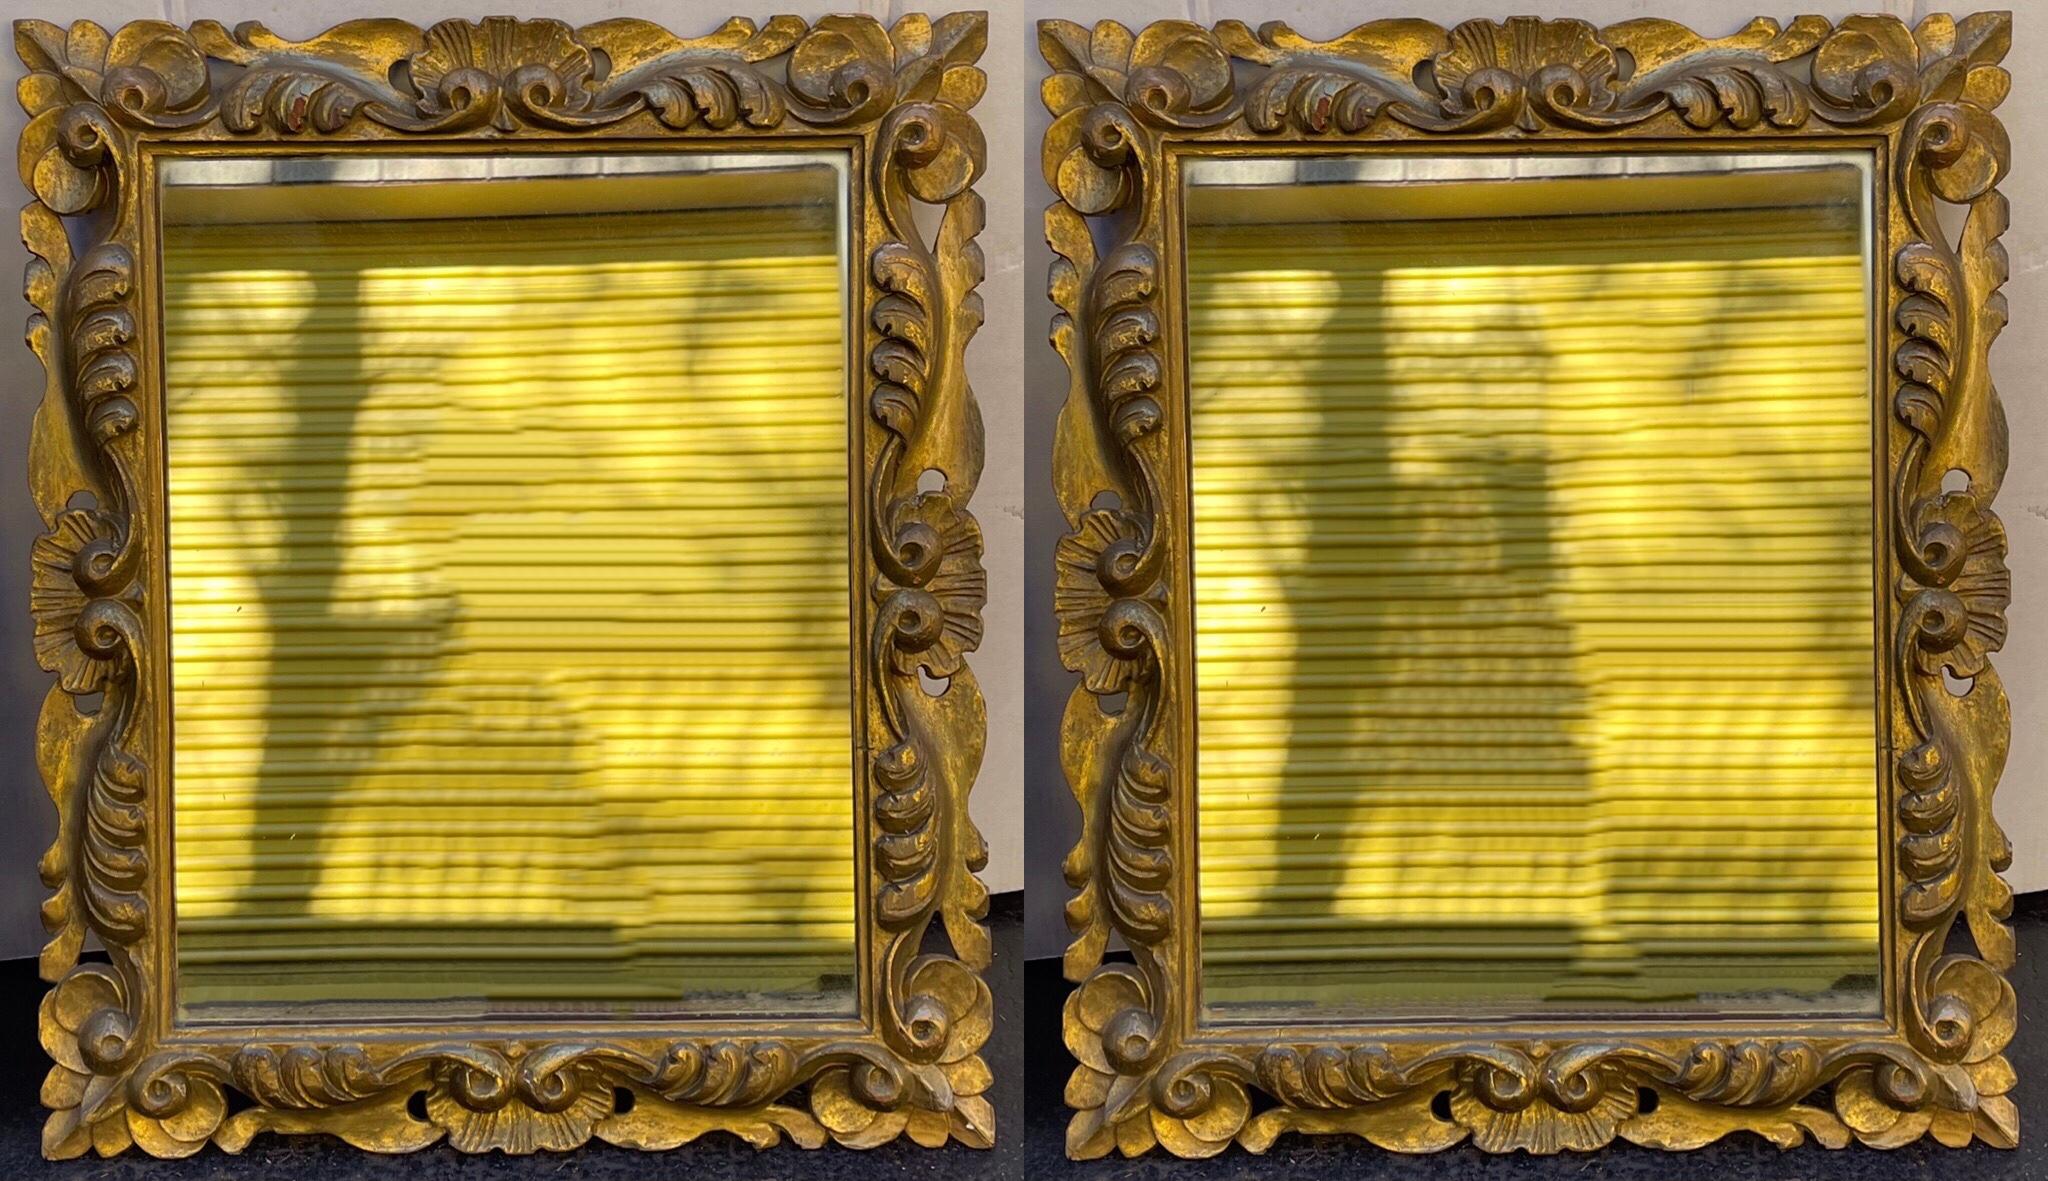 Il s'agit d'une belle paire de miroirs en bois doré sculpté du 19ème siècle. Ils présentent un joli motif de coquillage sculpté. Notez la menuiserie taillée à la main dans les coins !